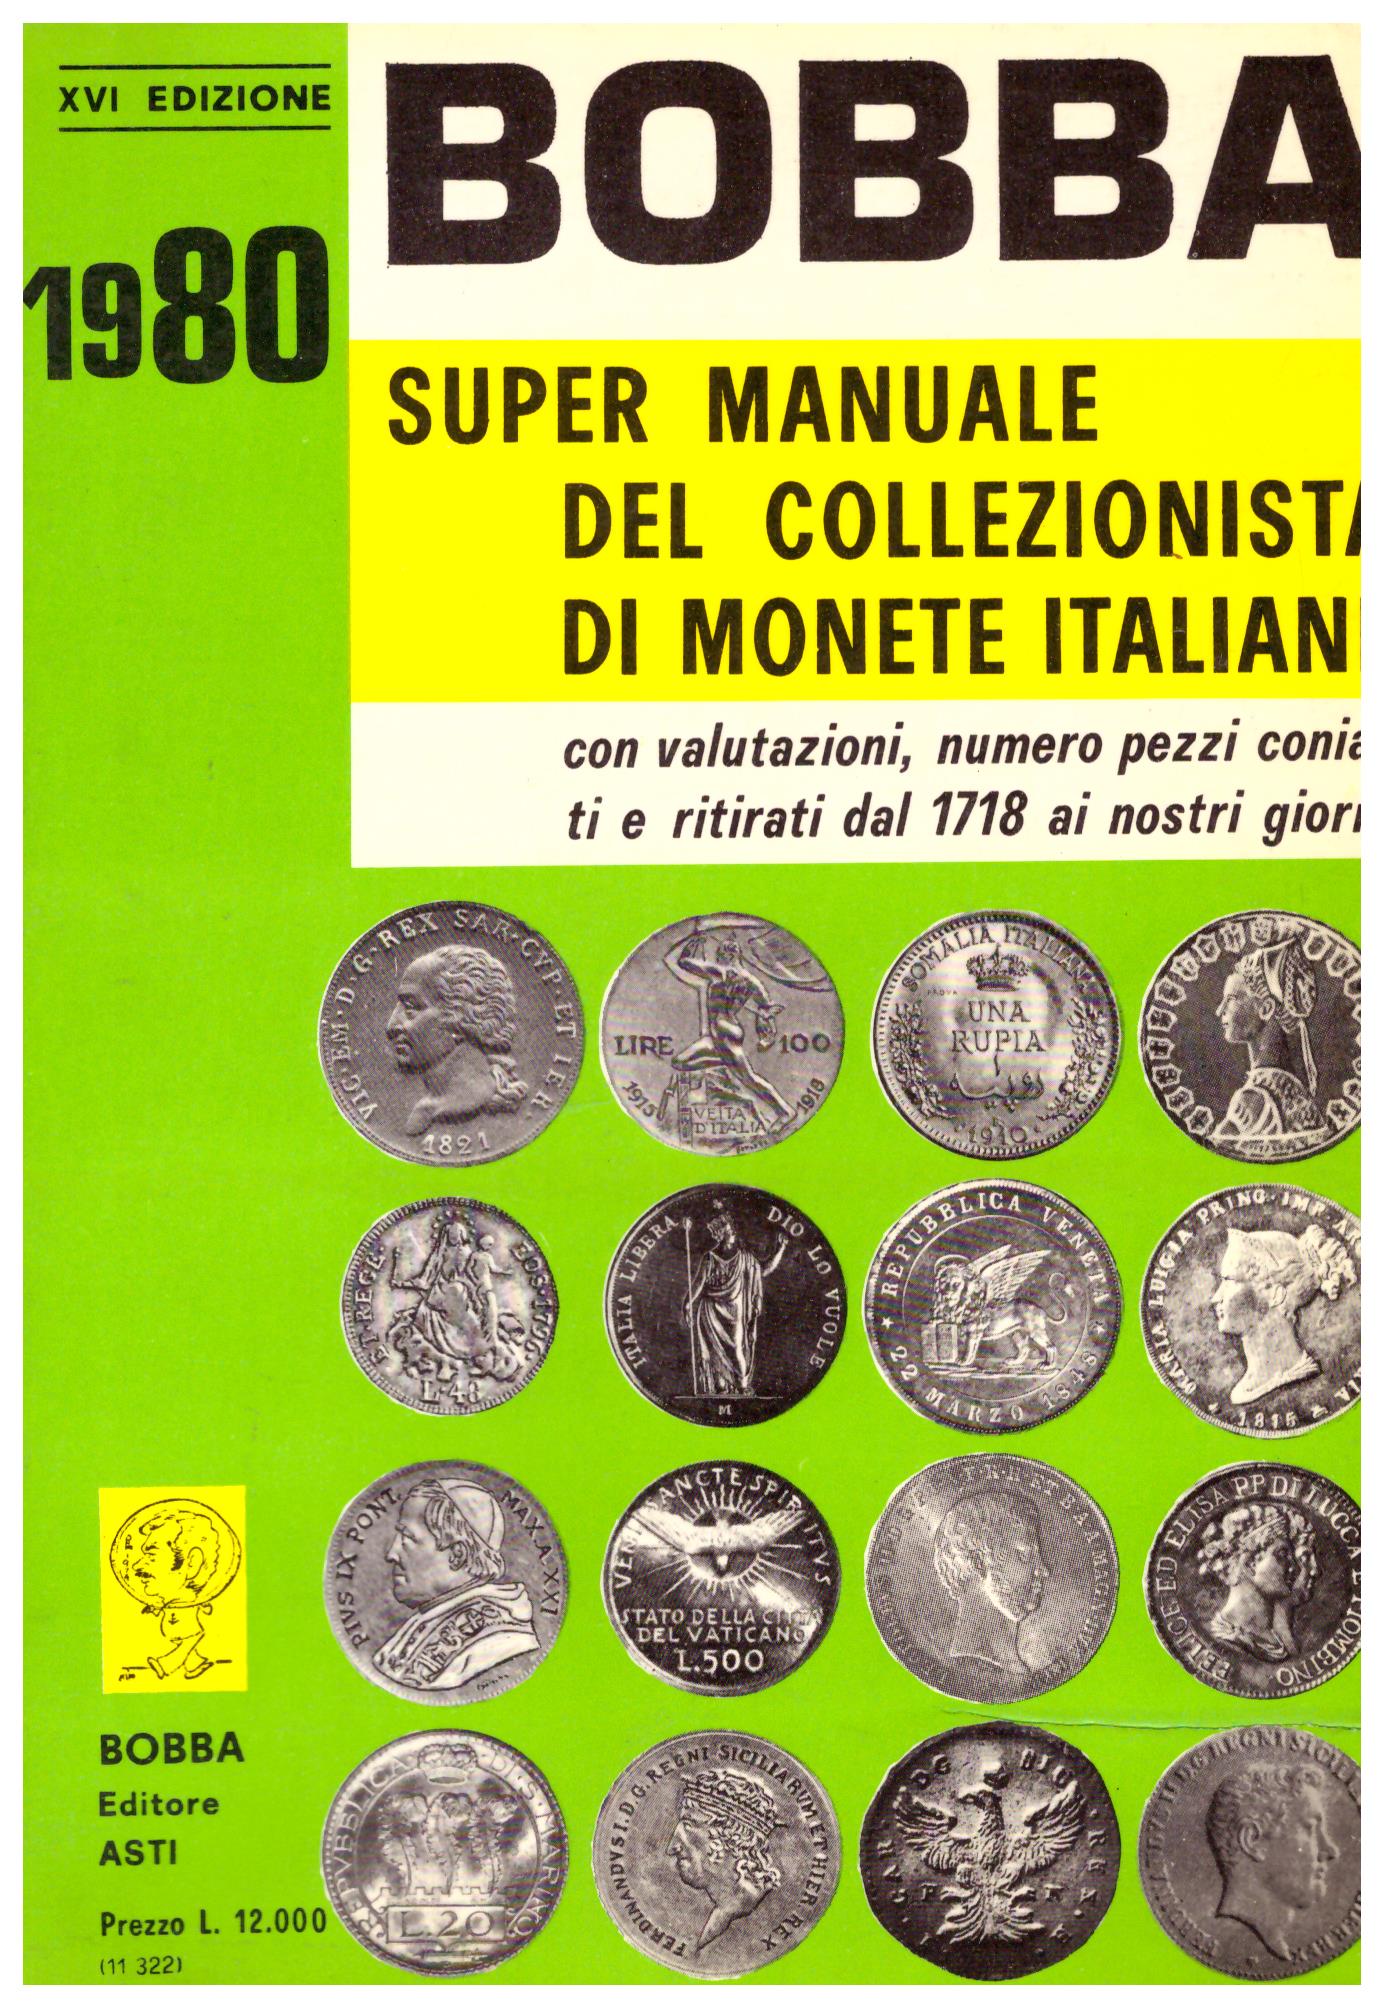 Super manuale del collezionista di monete italiane. Con valutazioni, numero pezzi coniati e ritirati dal 1718 ai nostri giorni.